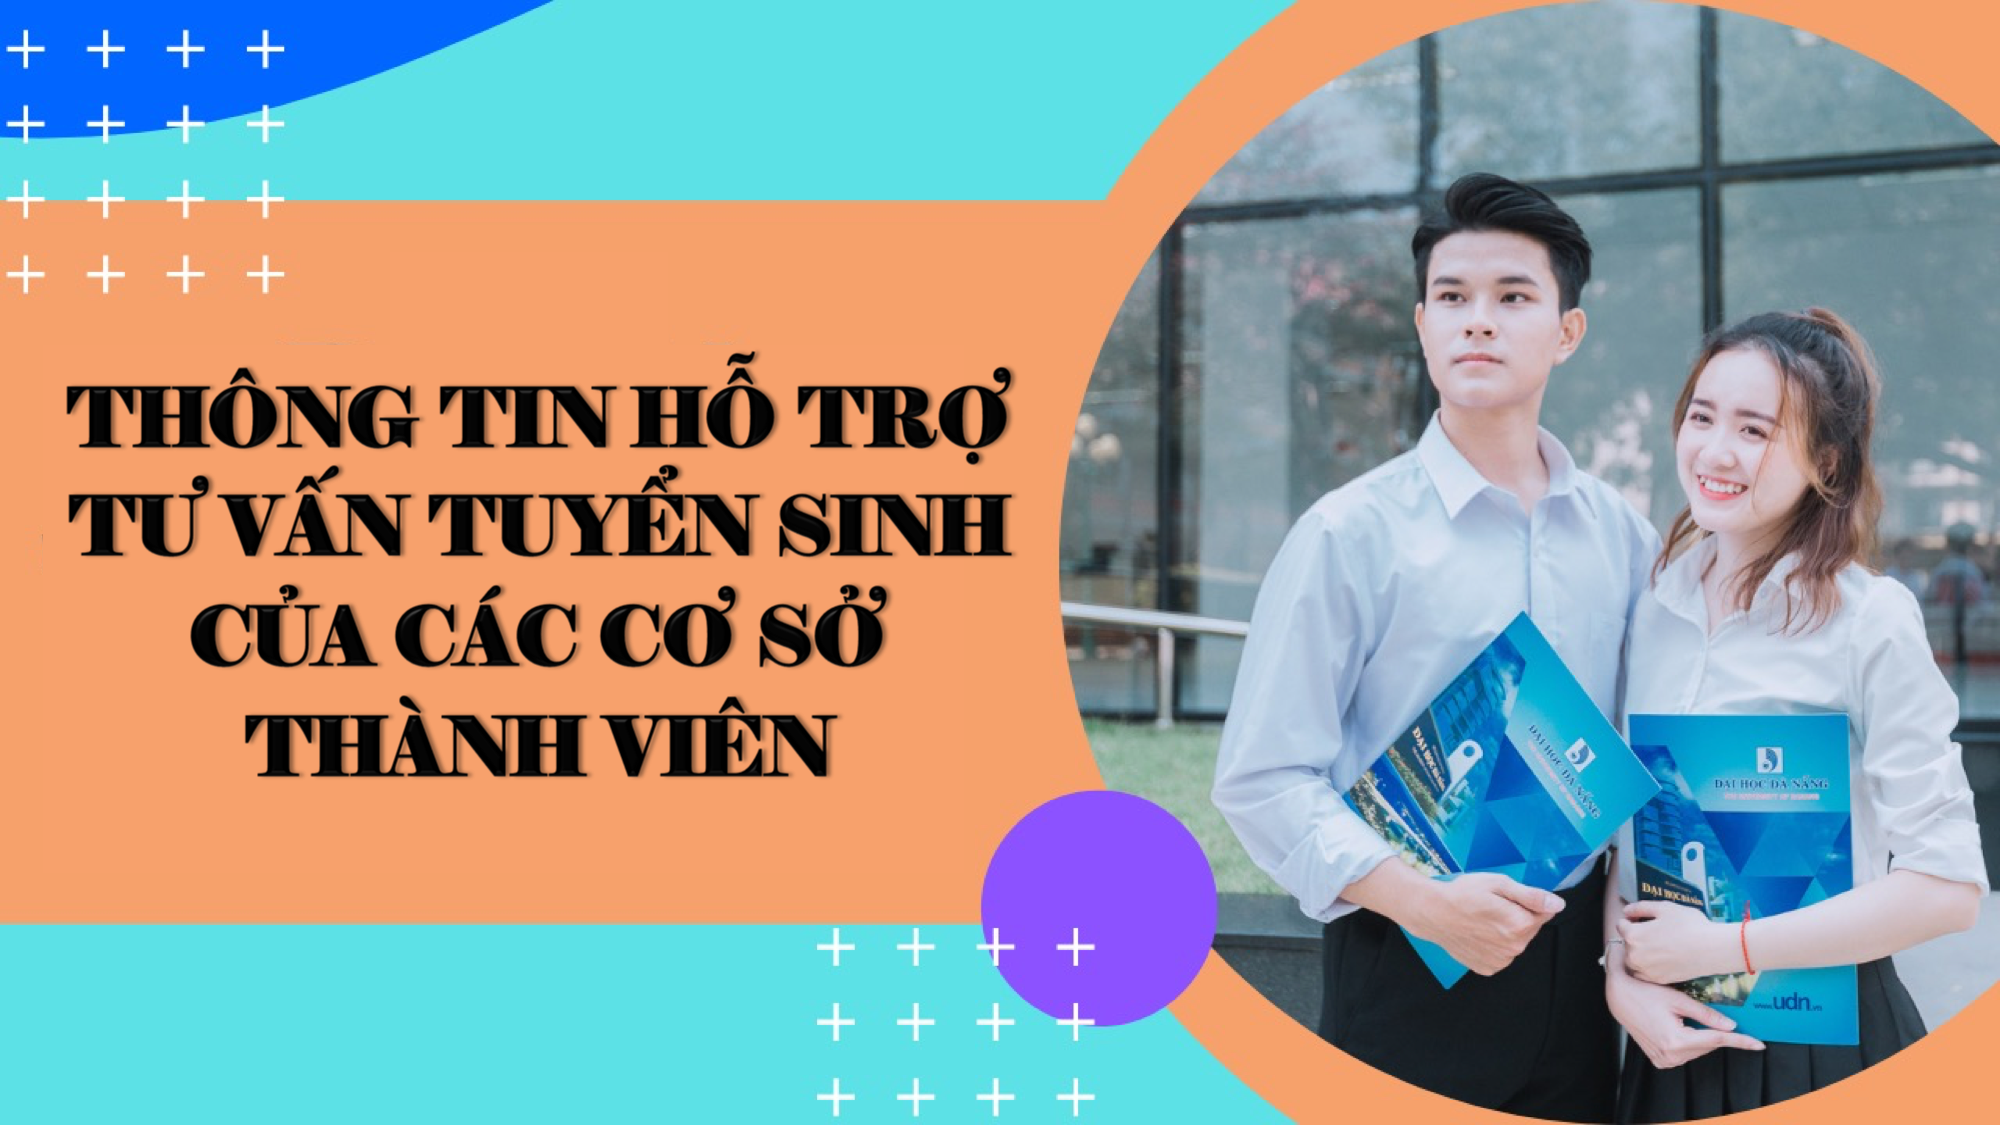 Thông tin hỗ trợ tư vấn tuyển sinh của các cơ sở thành viên thuộc Đại học Đà Nẵng